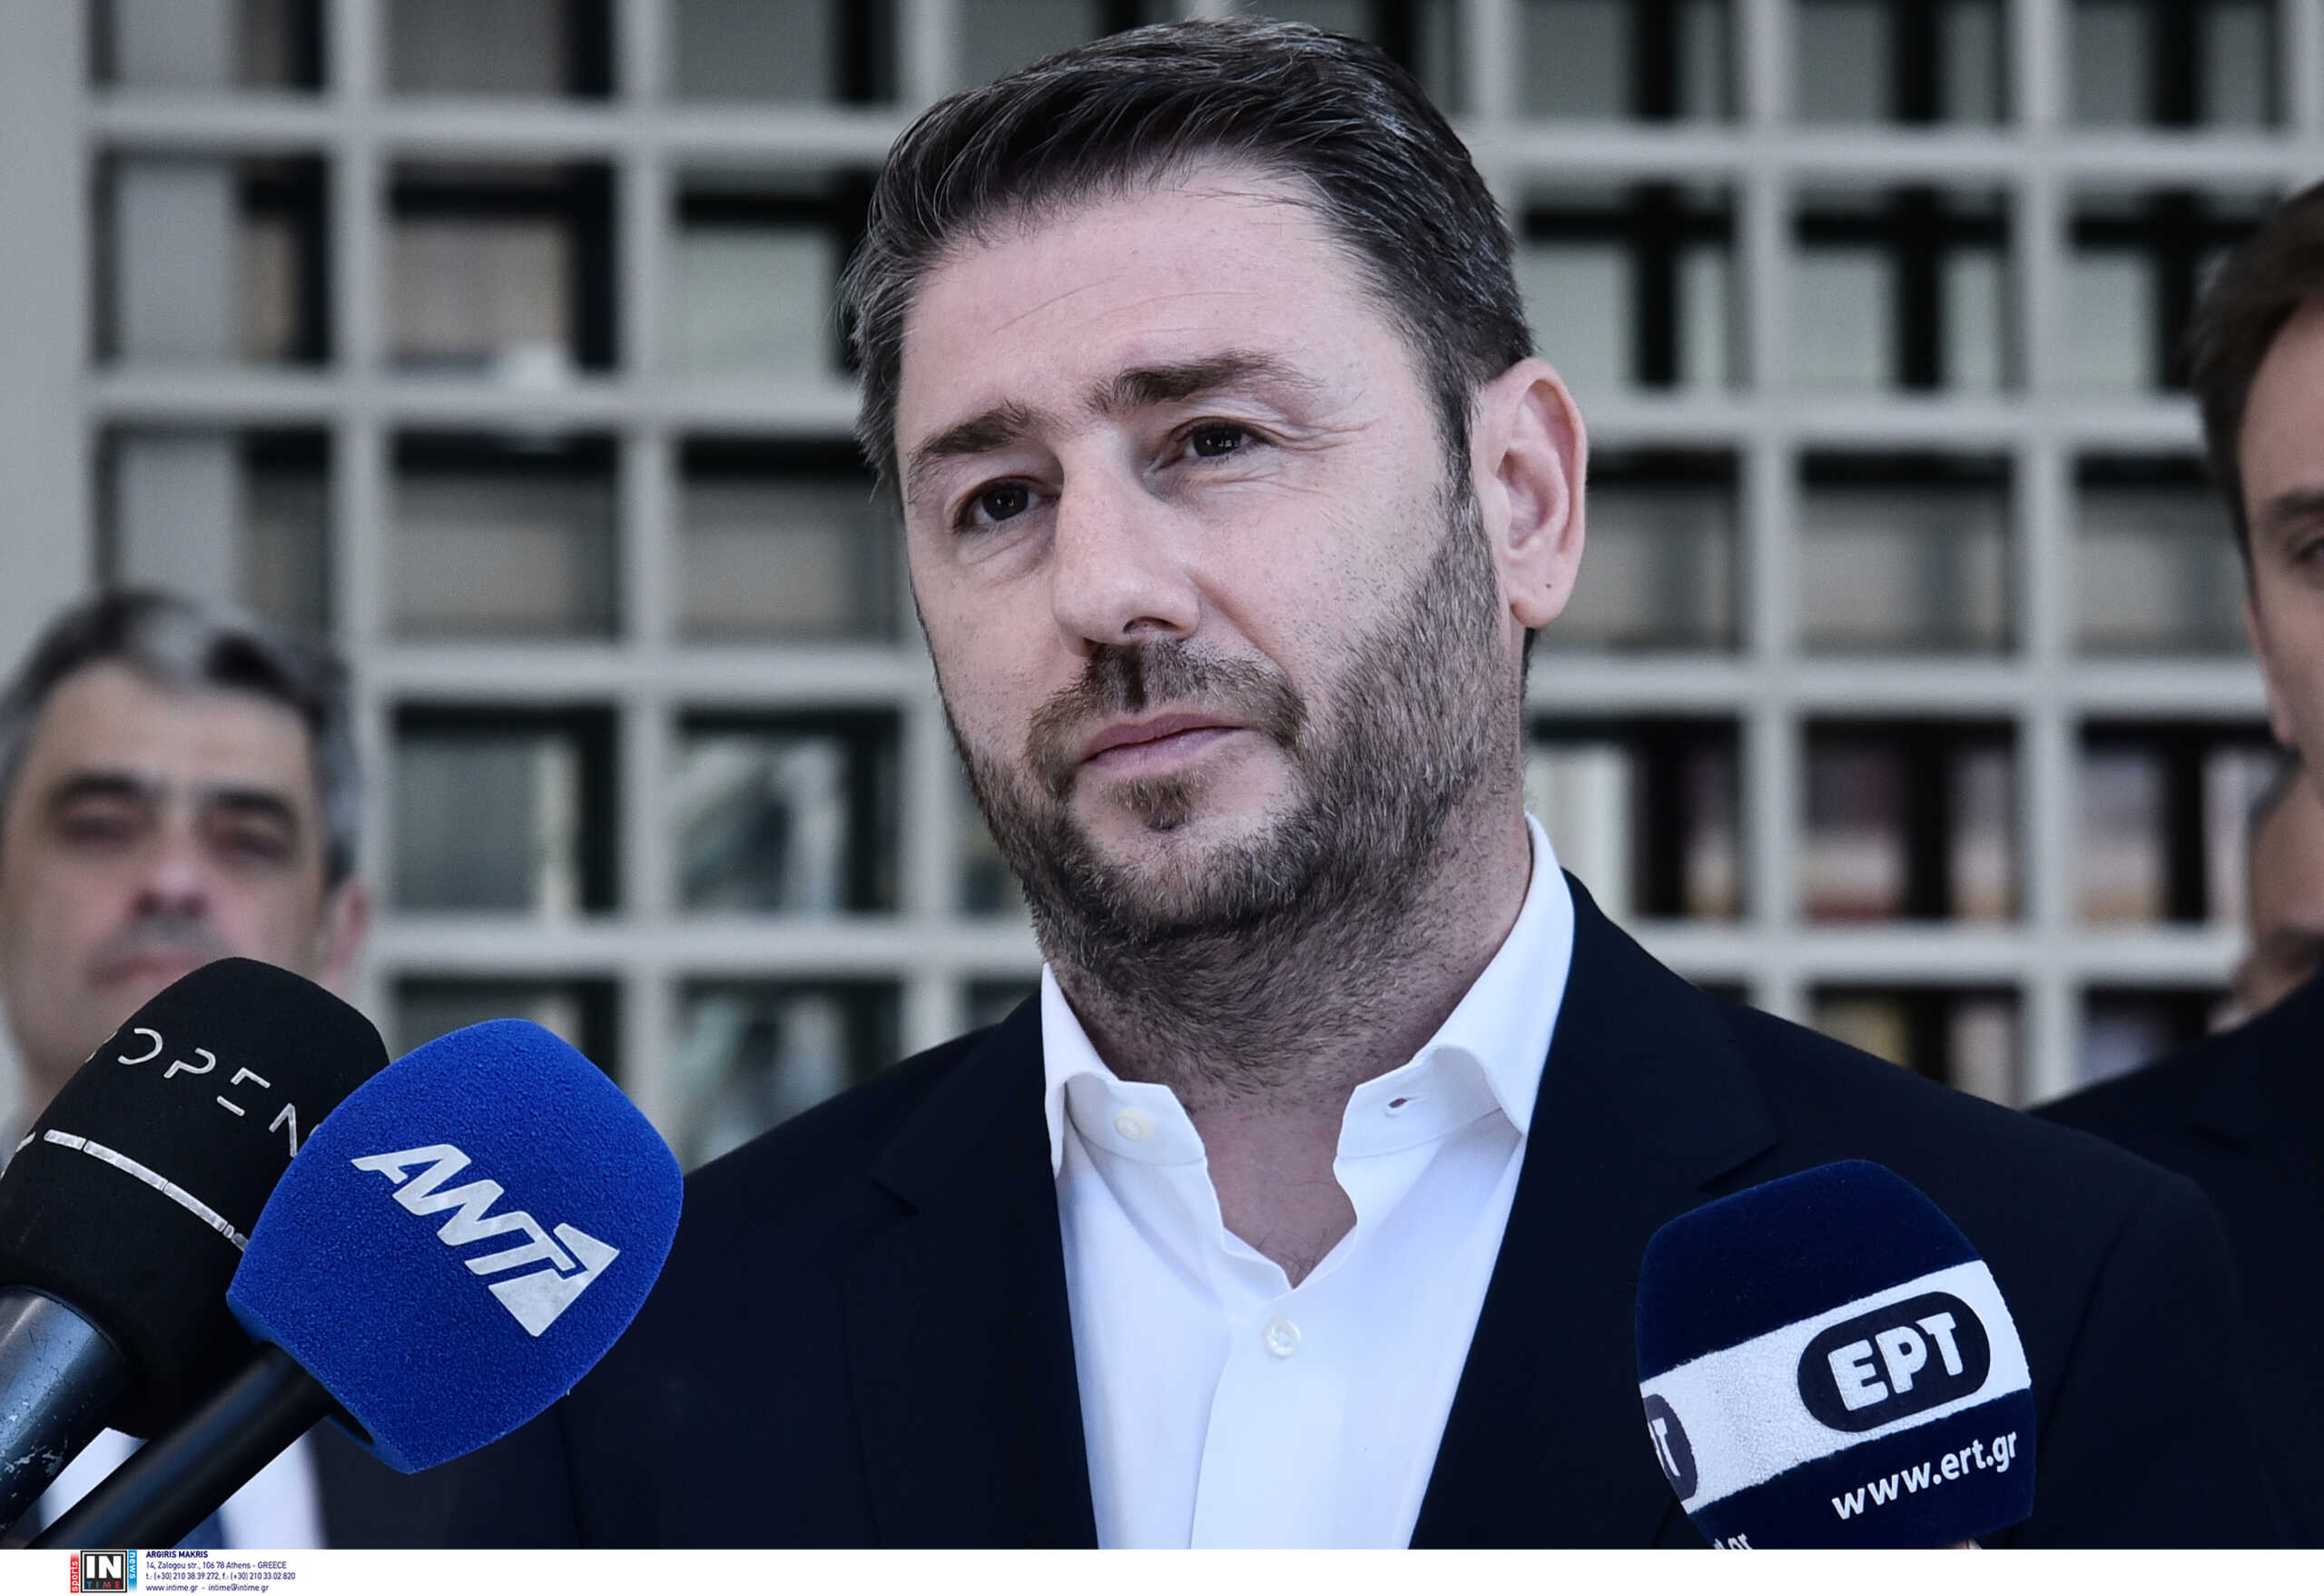 Νίκος Ανδρουλάκης για την παρακολούθησή του: Δεν πρόκειται να δεχθώ ενημέρωση «στο αυτί» – Δεν έχω καμία εμπιστοσύνη στους υπουργούς